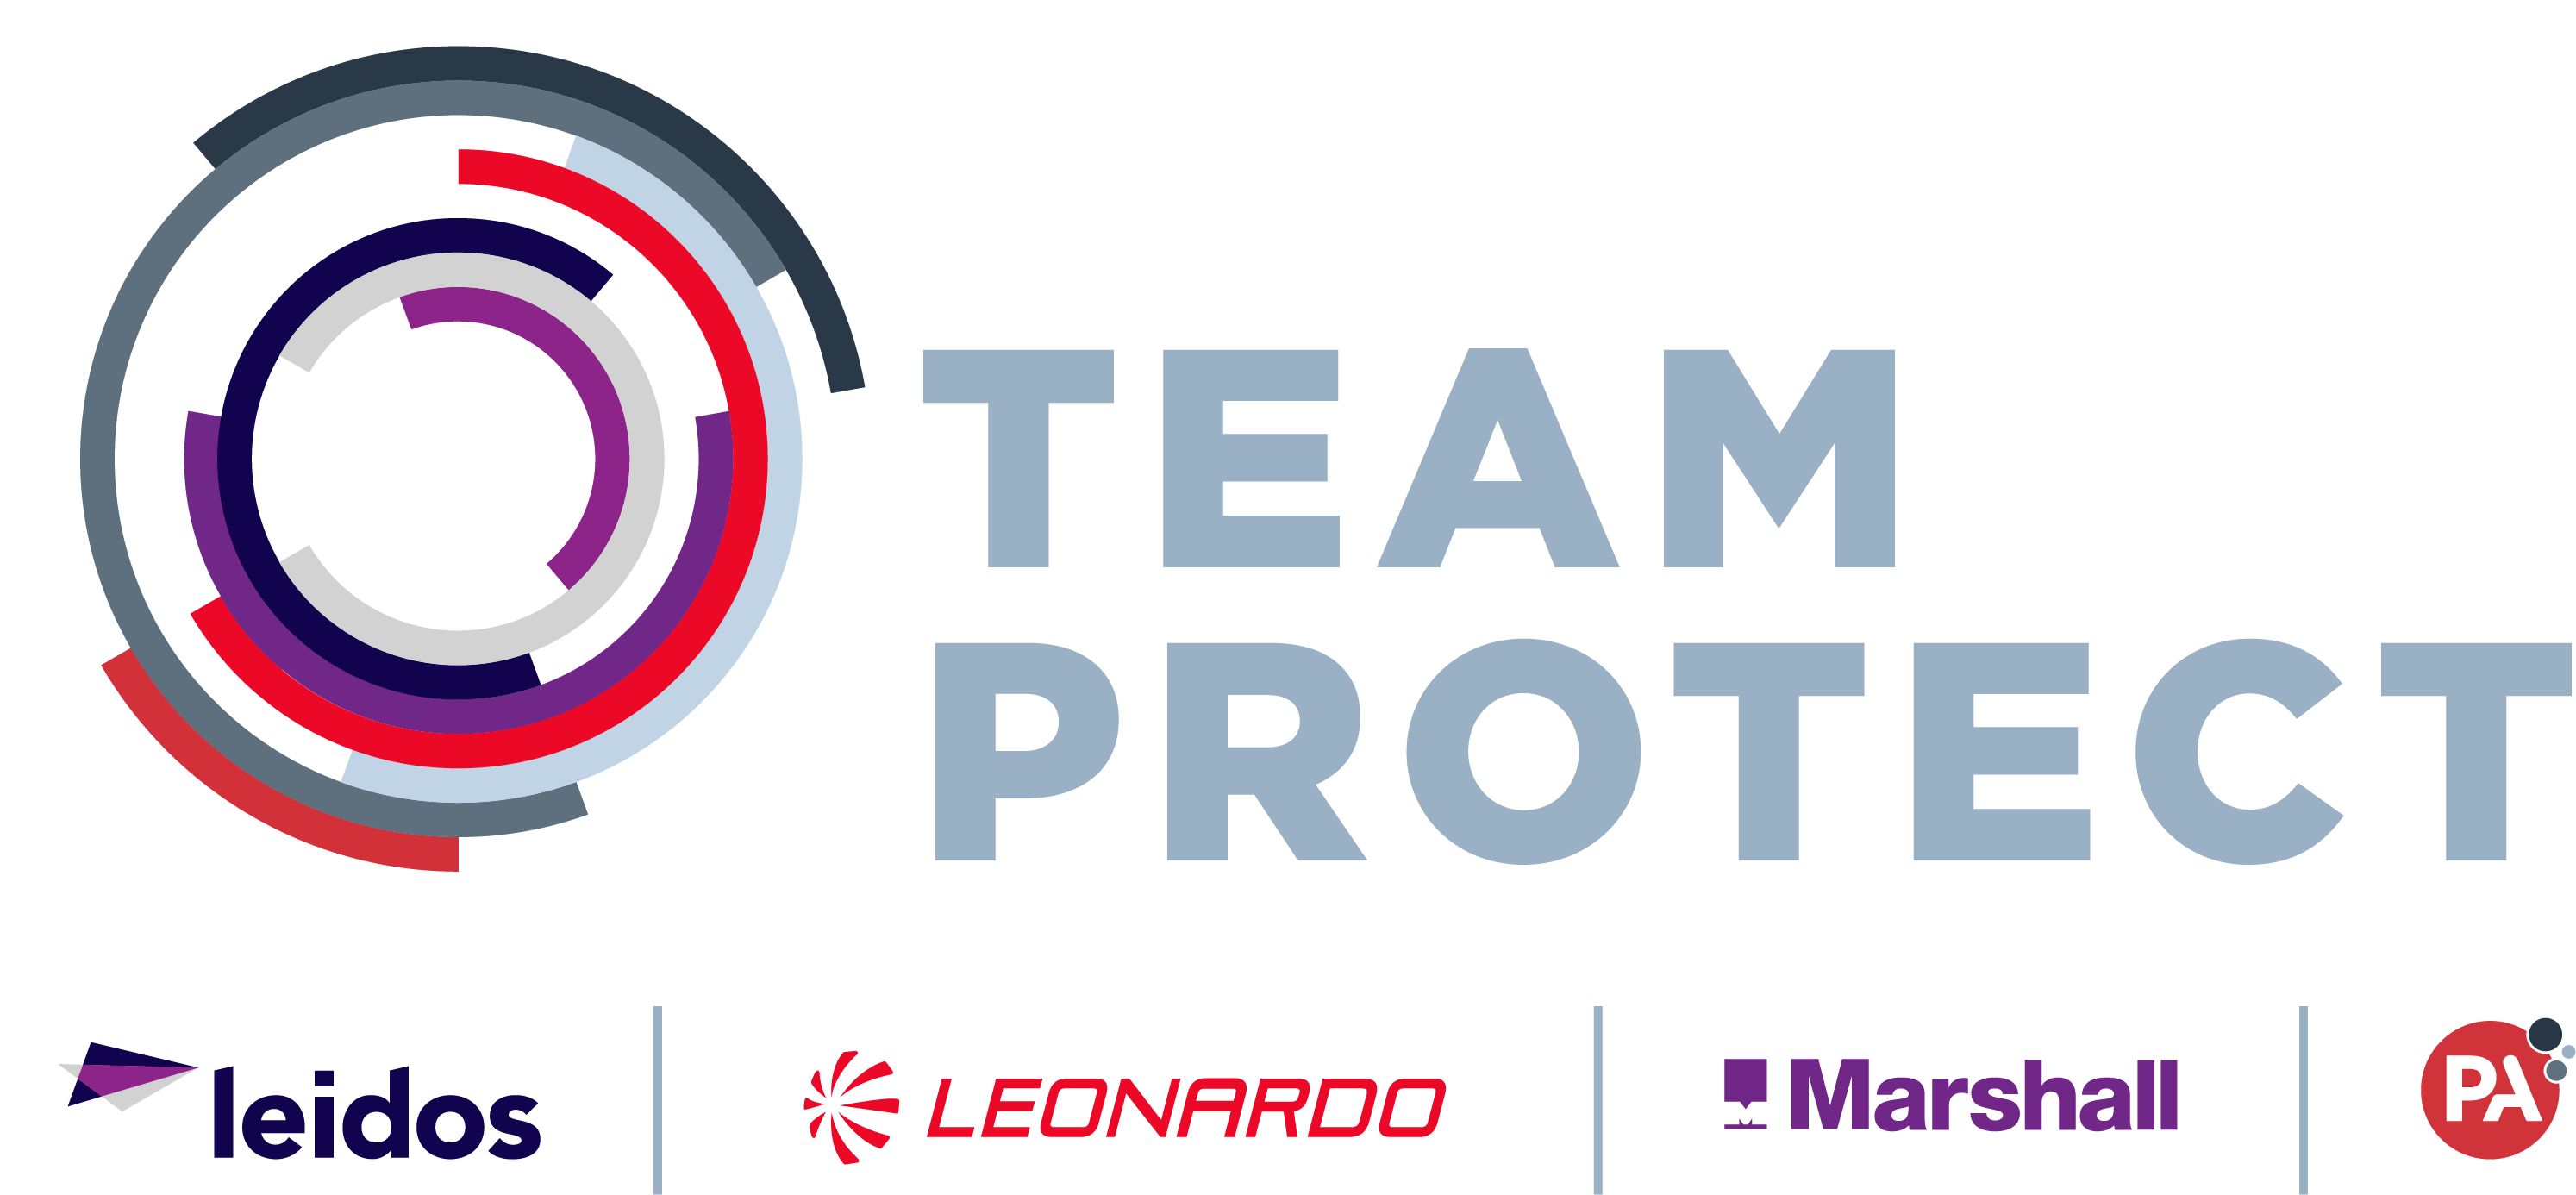 Team Protect - PA Consulting, Leidos, Marshall and Leonardo